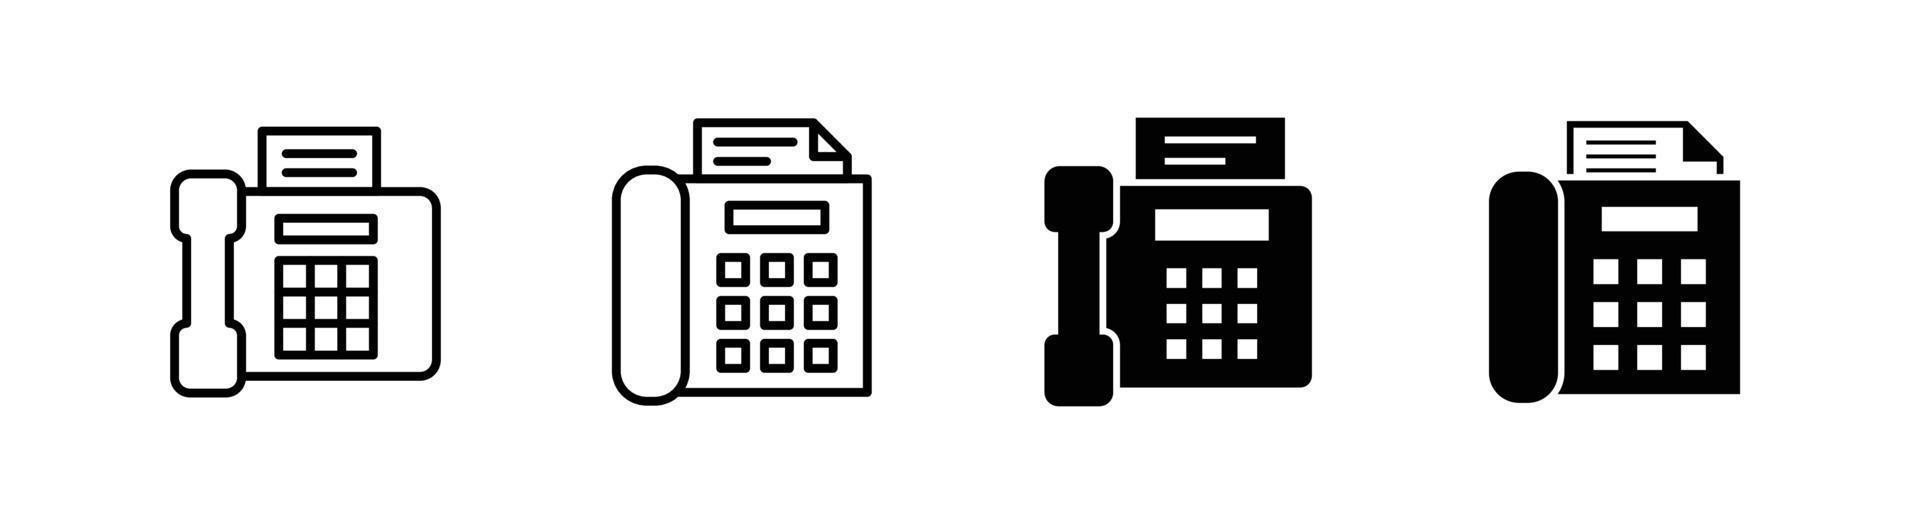 elemento de design de ícone de máquina de fax adequado para site, design de impressão ou aplicativo vetor